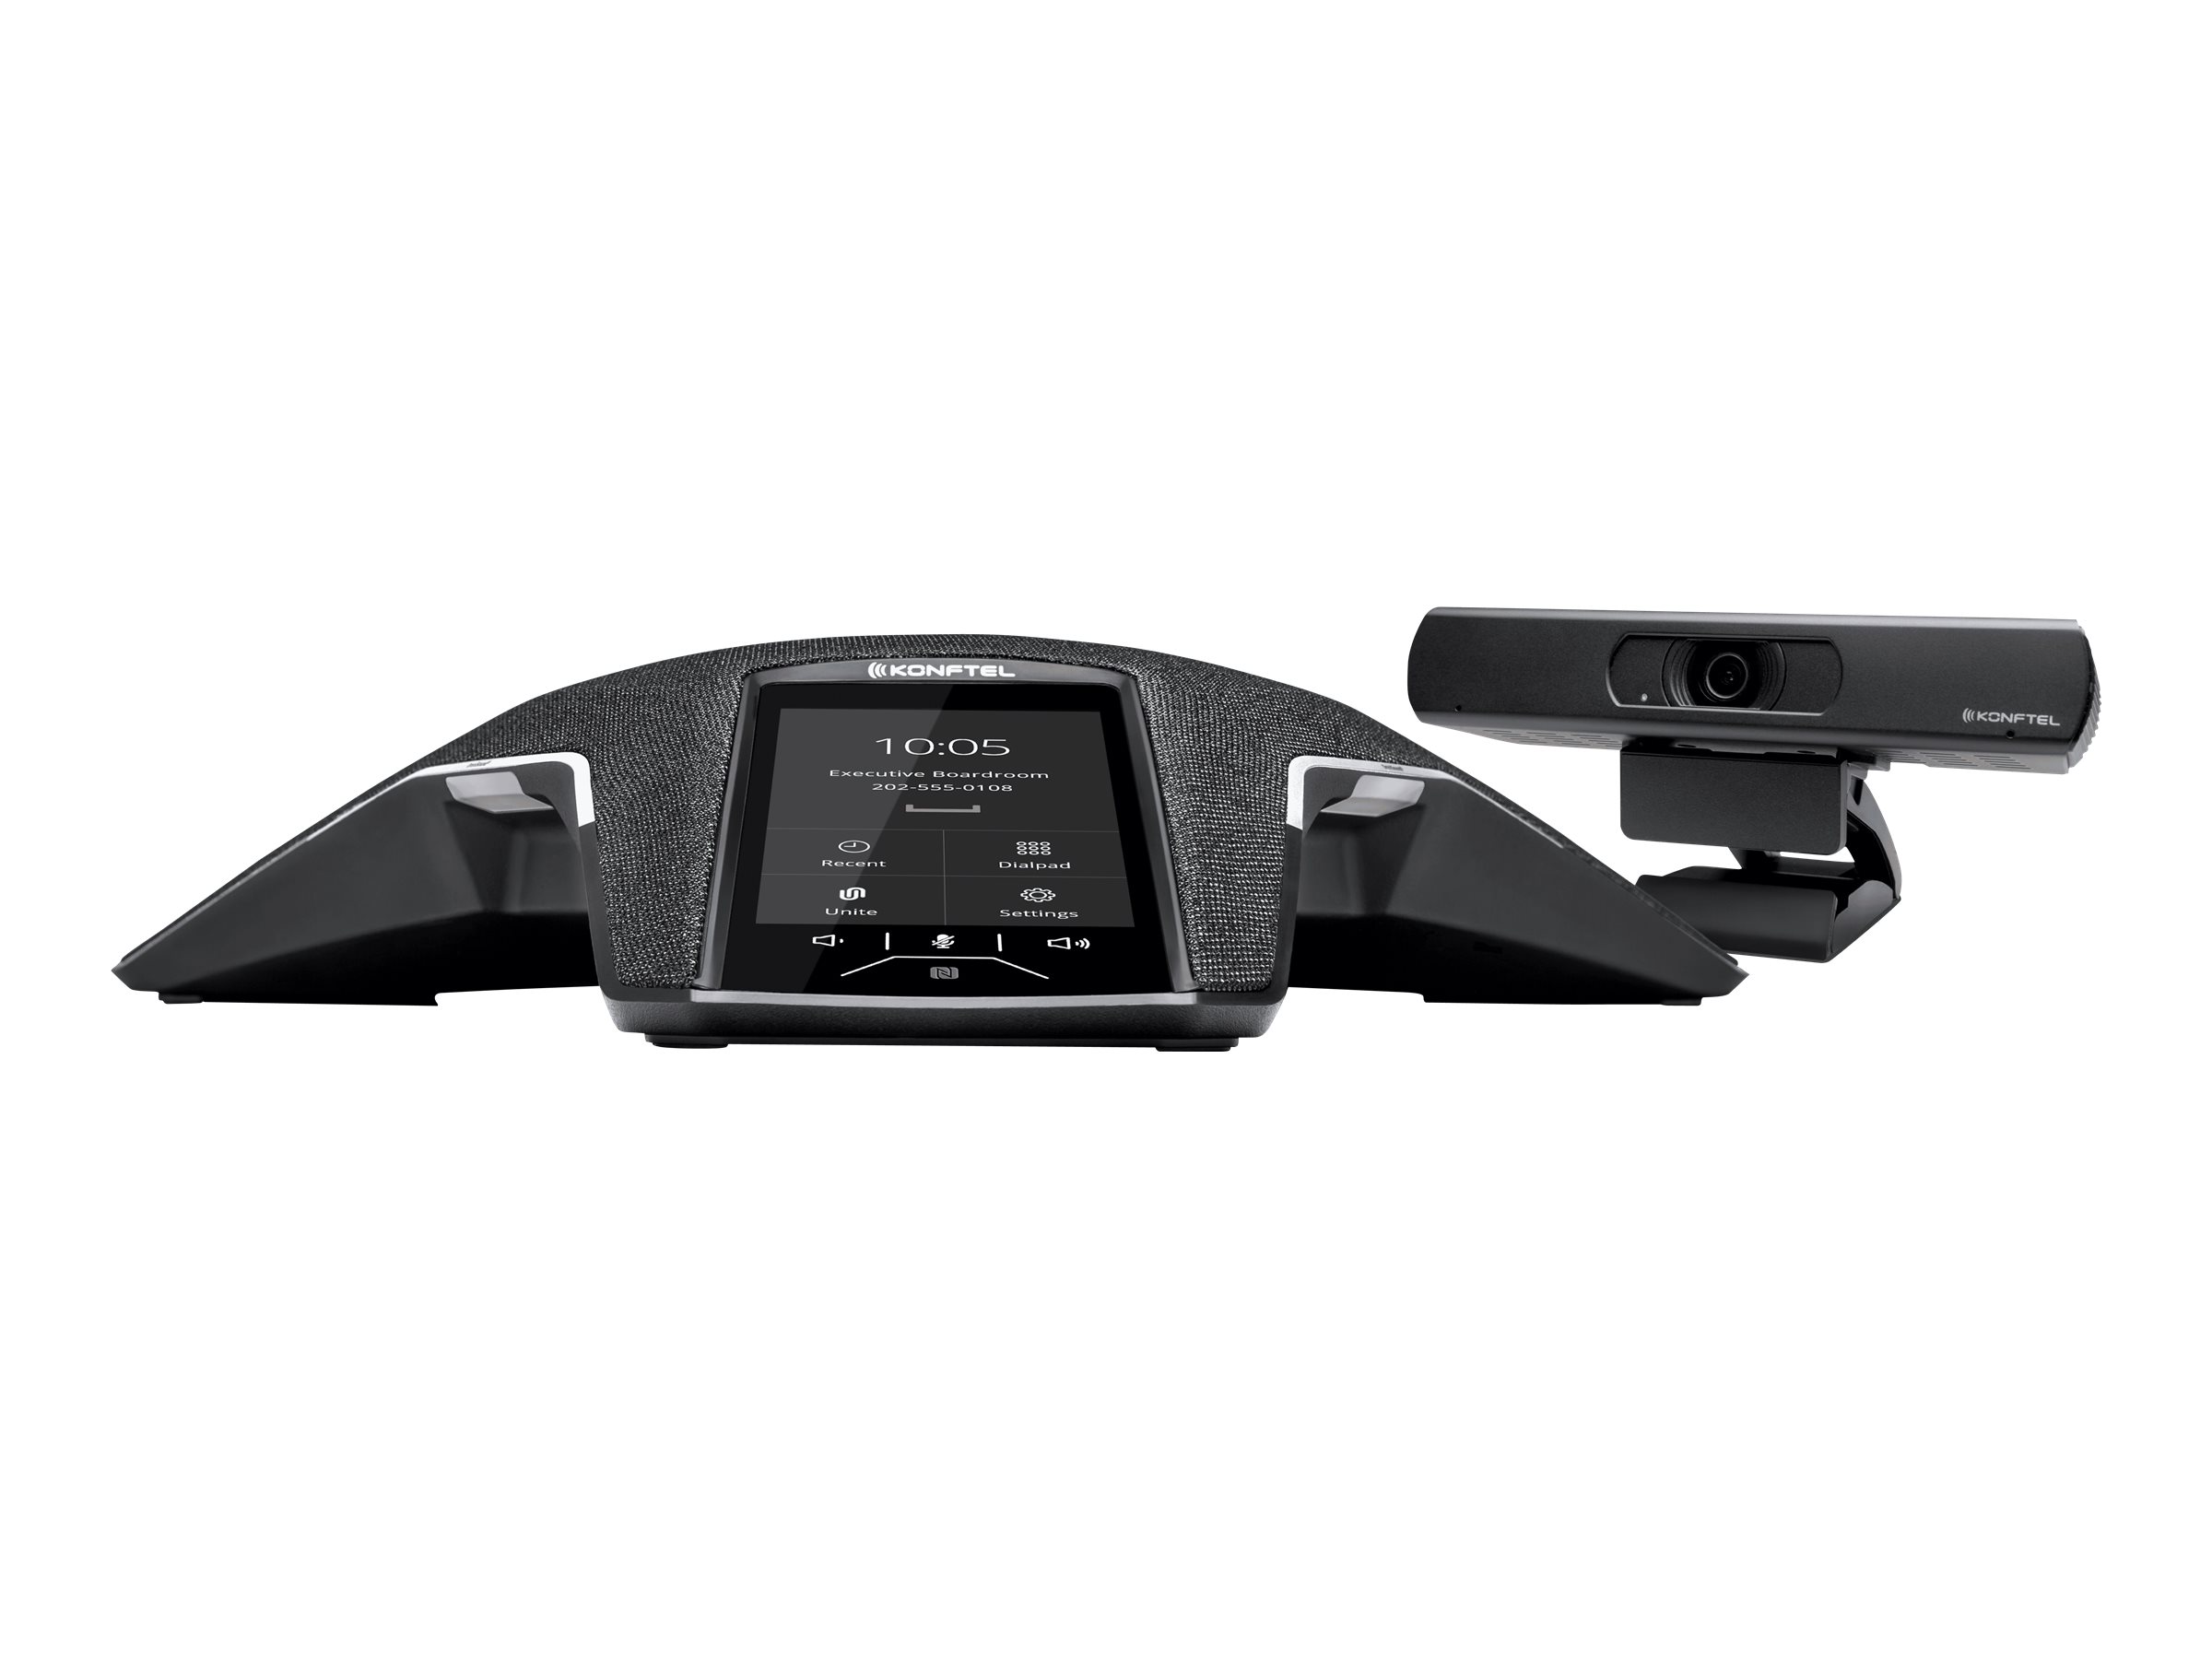 Konftel C20800 Attach - Kit für Videokonferenzen (Freisprechgerät, camera, PoE-Injektor) - Schwarz, Charcoal Black